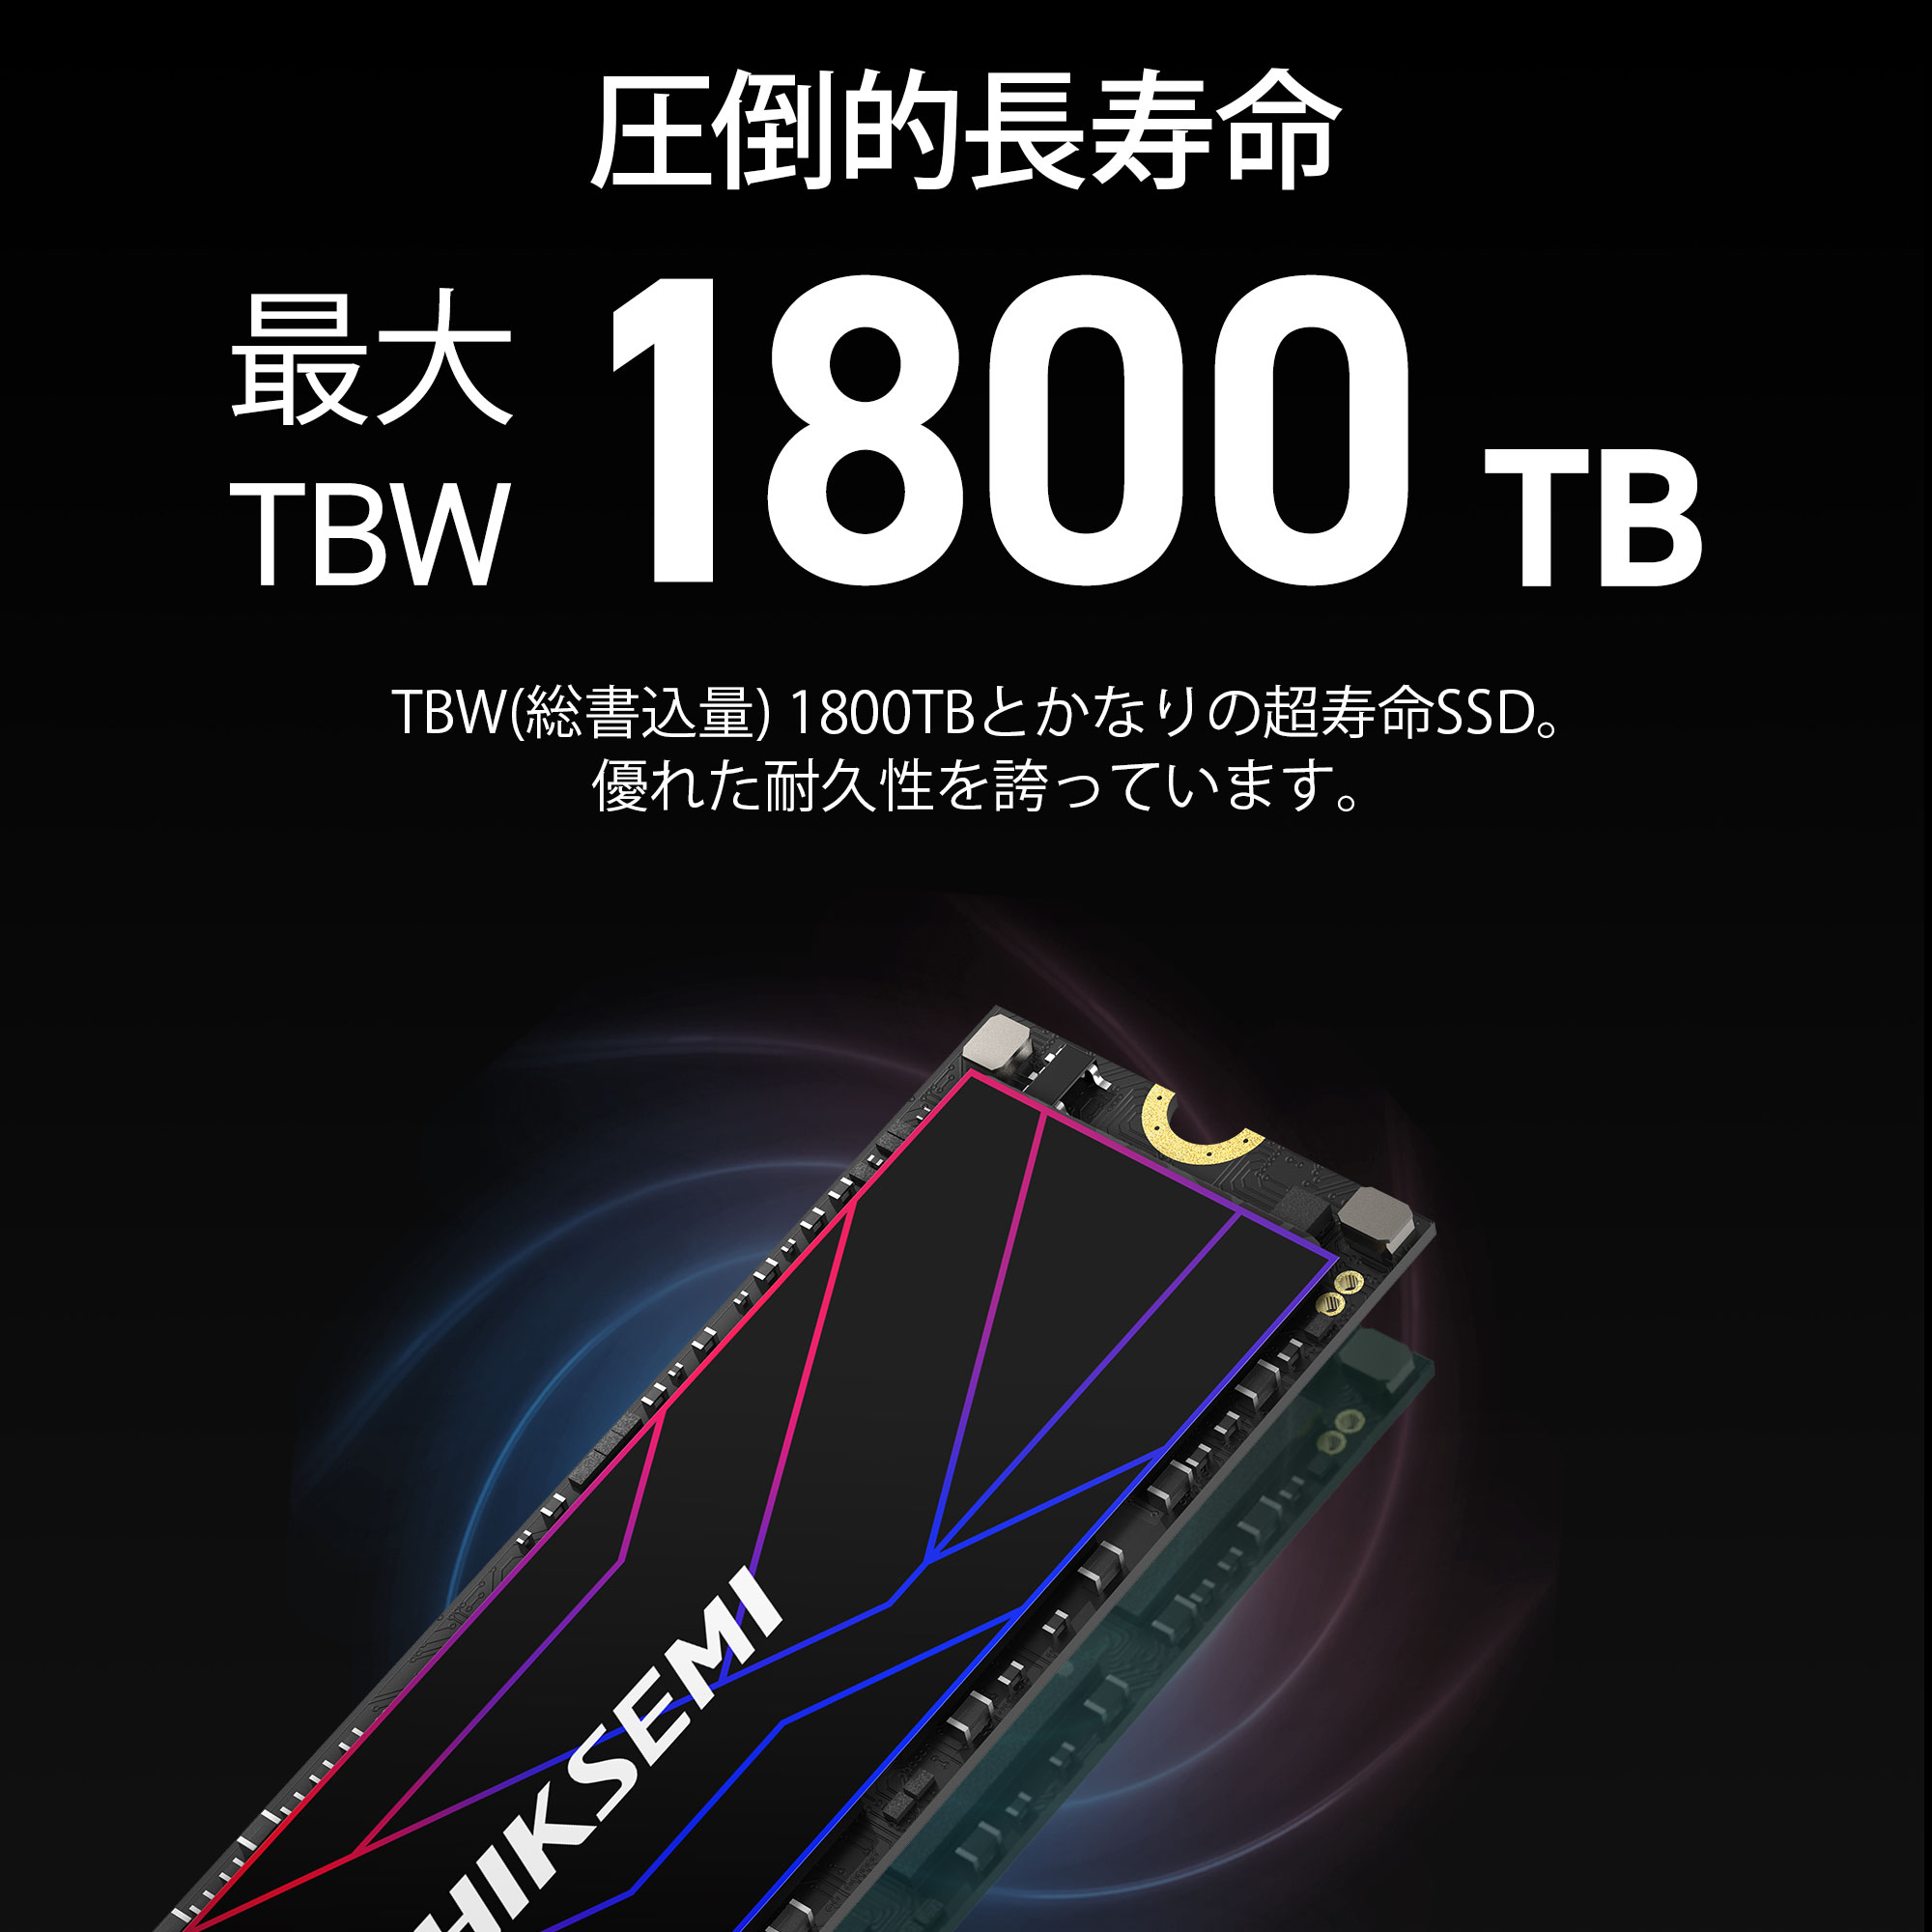 HIKSEMI 1TB NVMe SSD PCIe Gen 4×4 R:7,450MB/s W:6,600MB/s PS5確認 